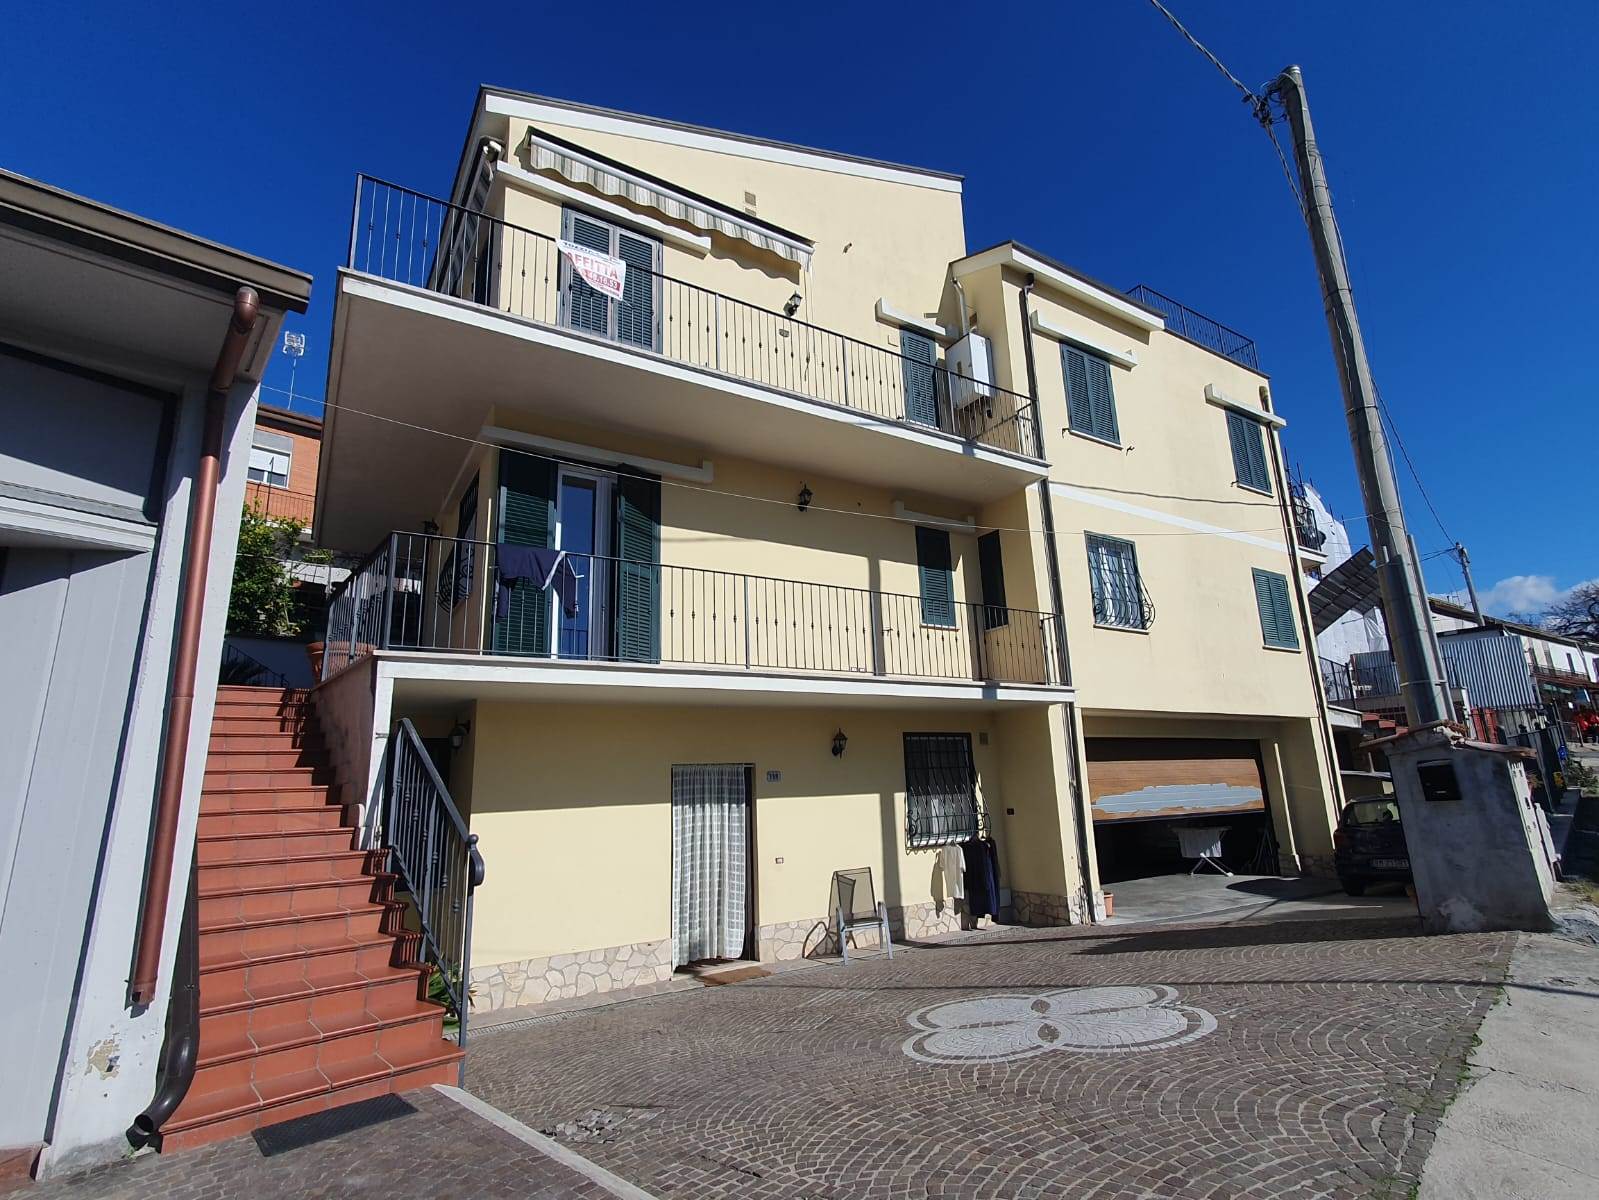 Appartamento in affitto a Fara in Sabina, 3 locali, zona cci, prezzo € 600 | PortaleAgenzieImmobiliari.it